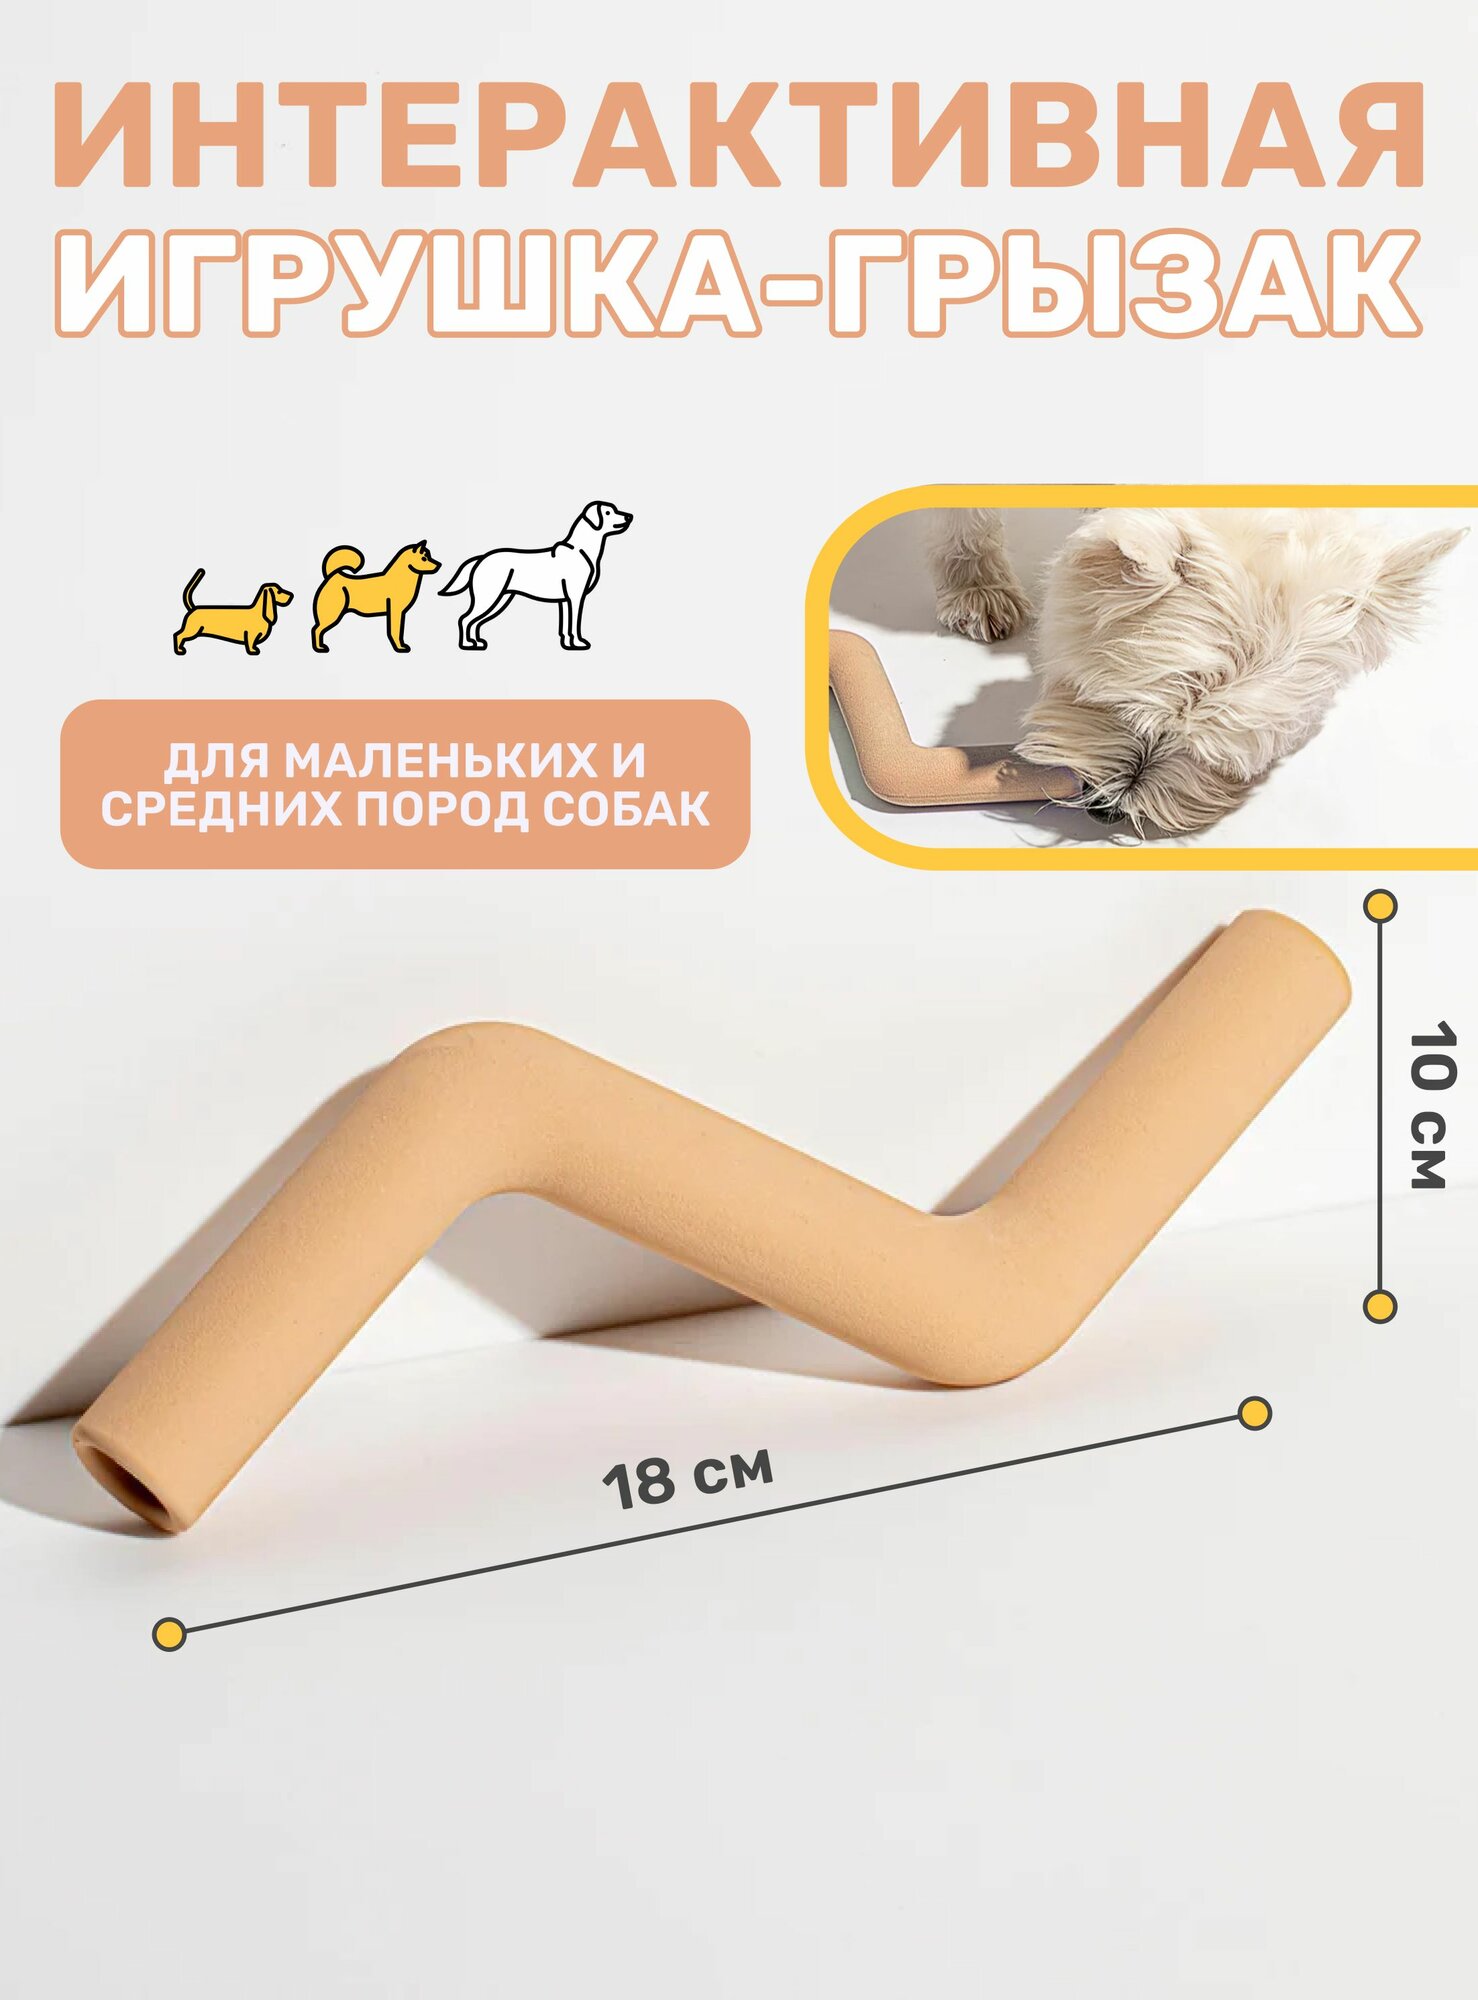 Интерактивная резиновая игрушка для собак Kisha, грейфер грызак для жевания, перетягивания, грызения, чистки зубов и дрессировки мелких и средних собак 19 см